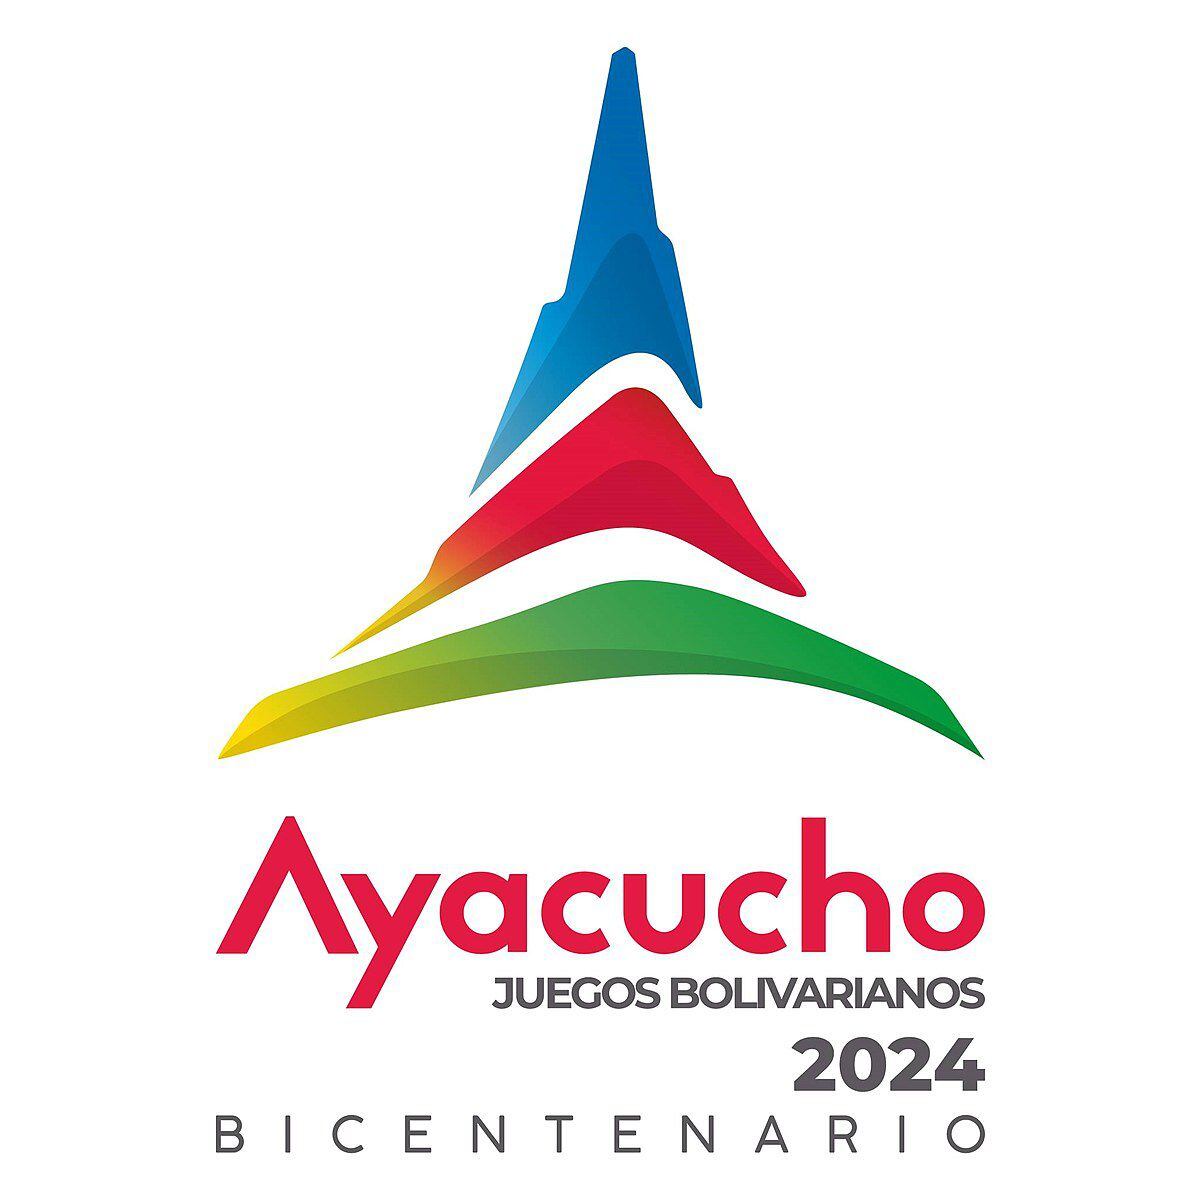 Juegos Bolivarianos Ayacucho 2024